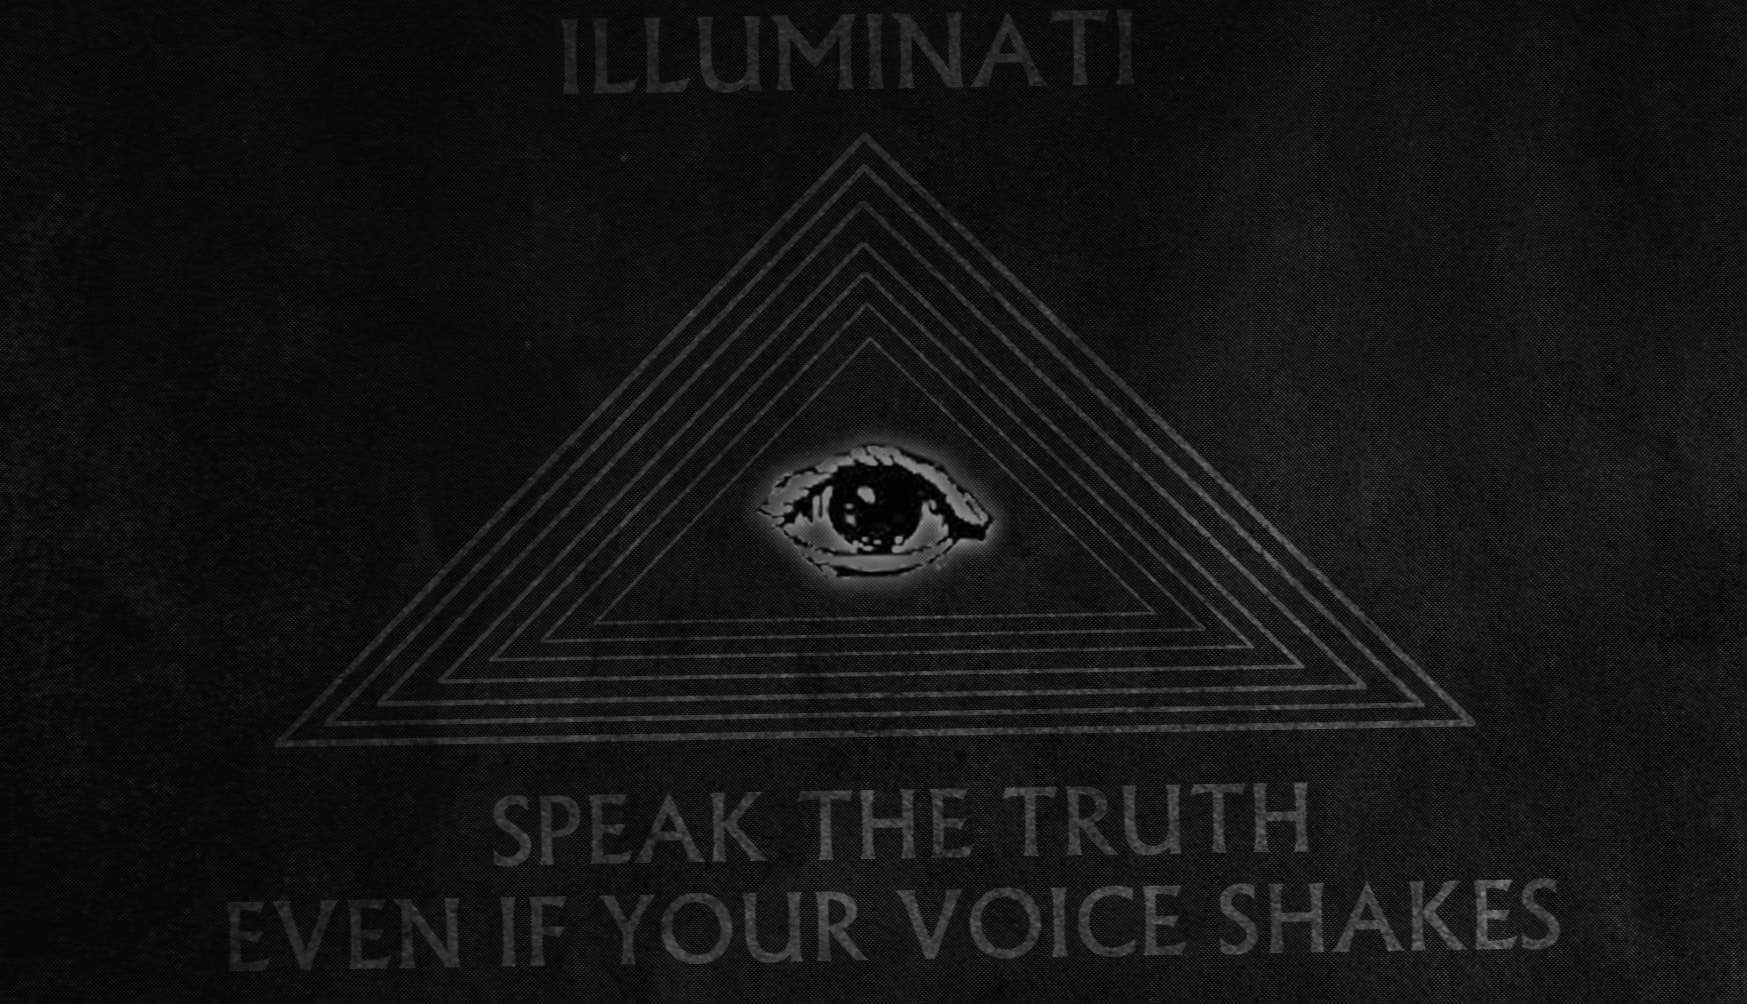 Illuminati at 1024 x 1024 iPad size wallpapers HD quality